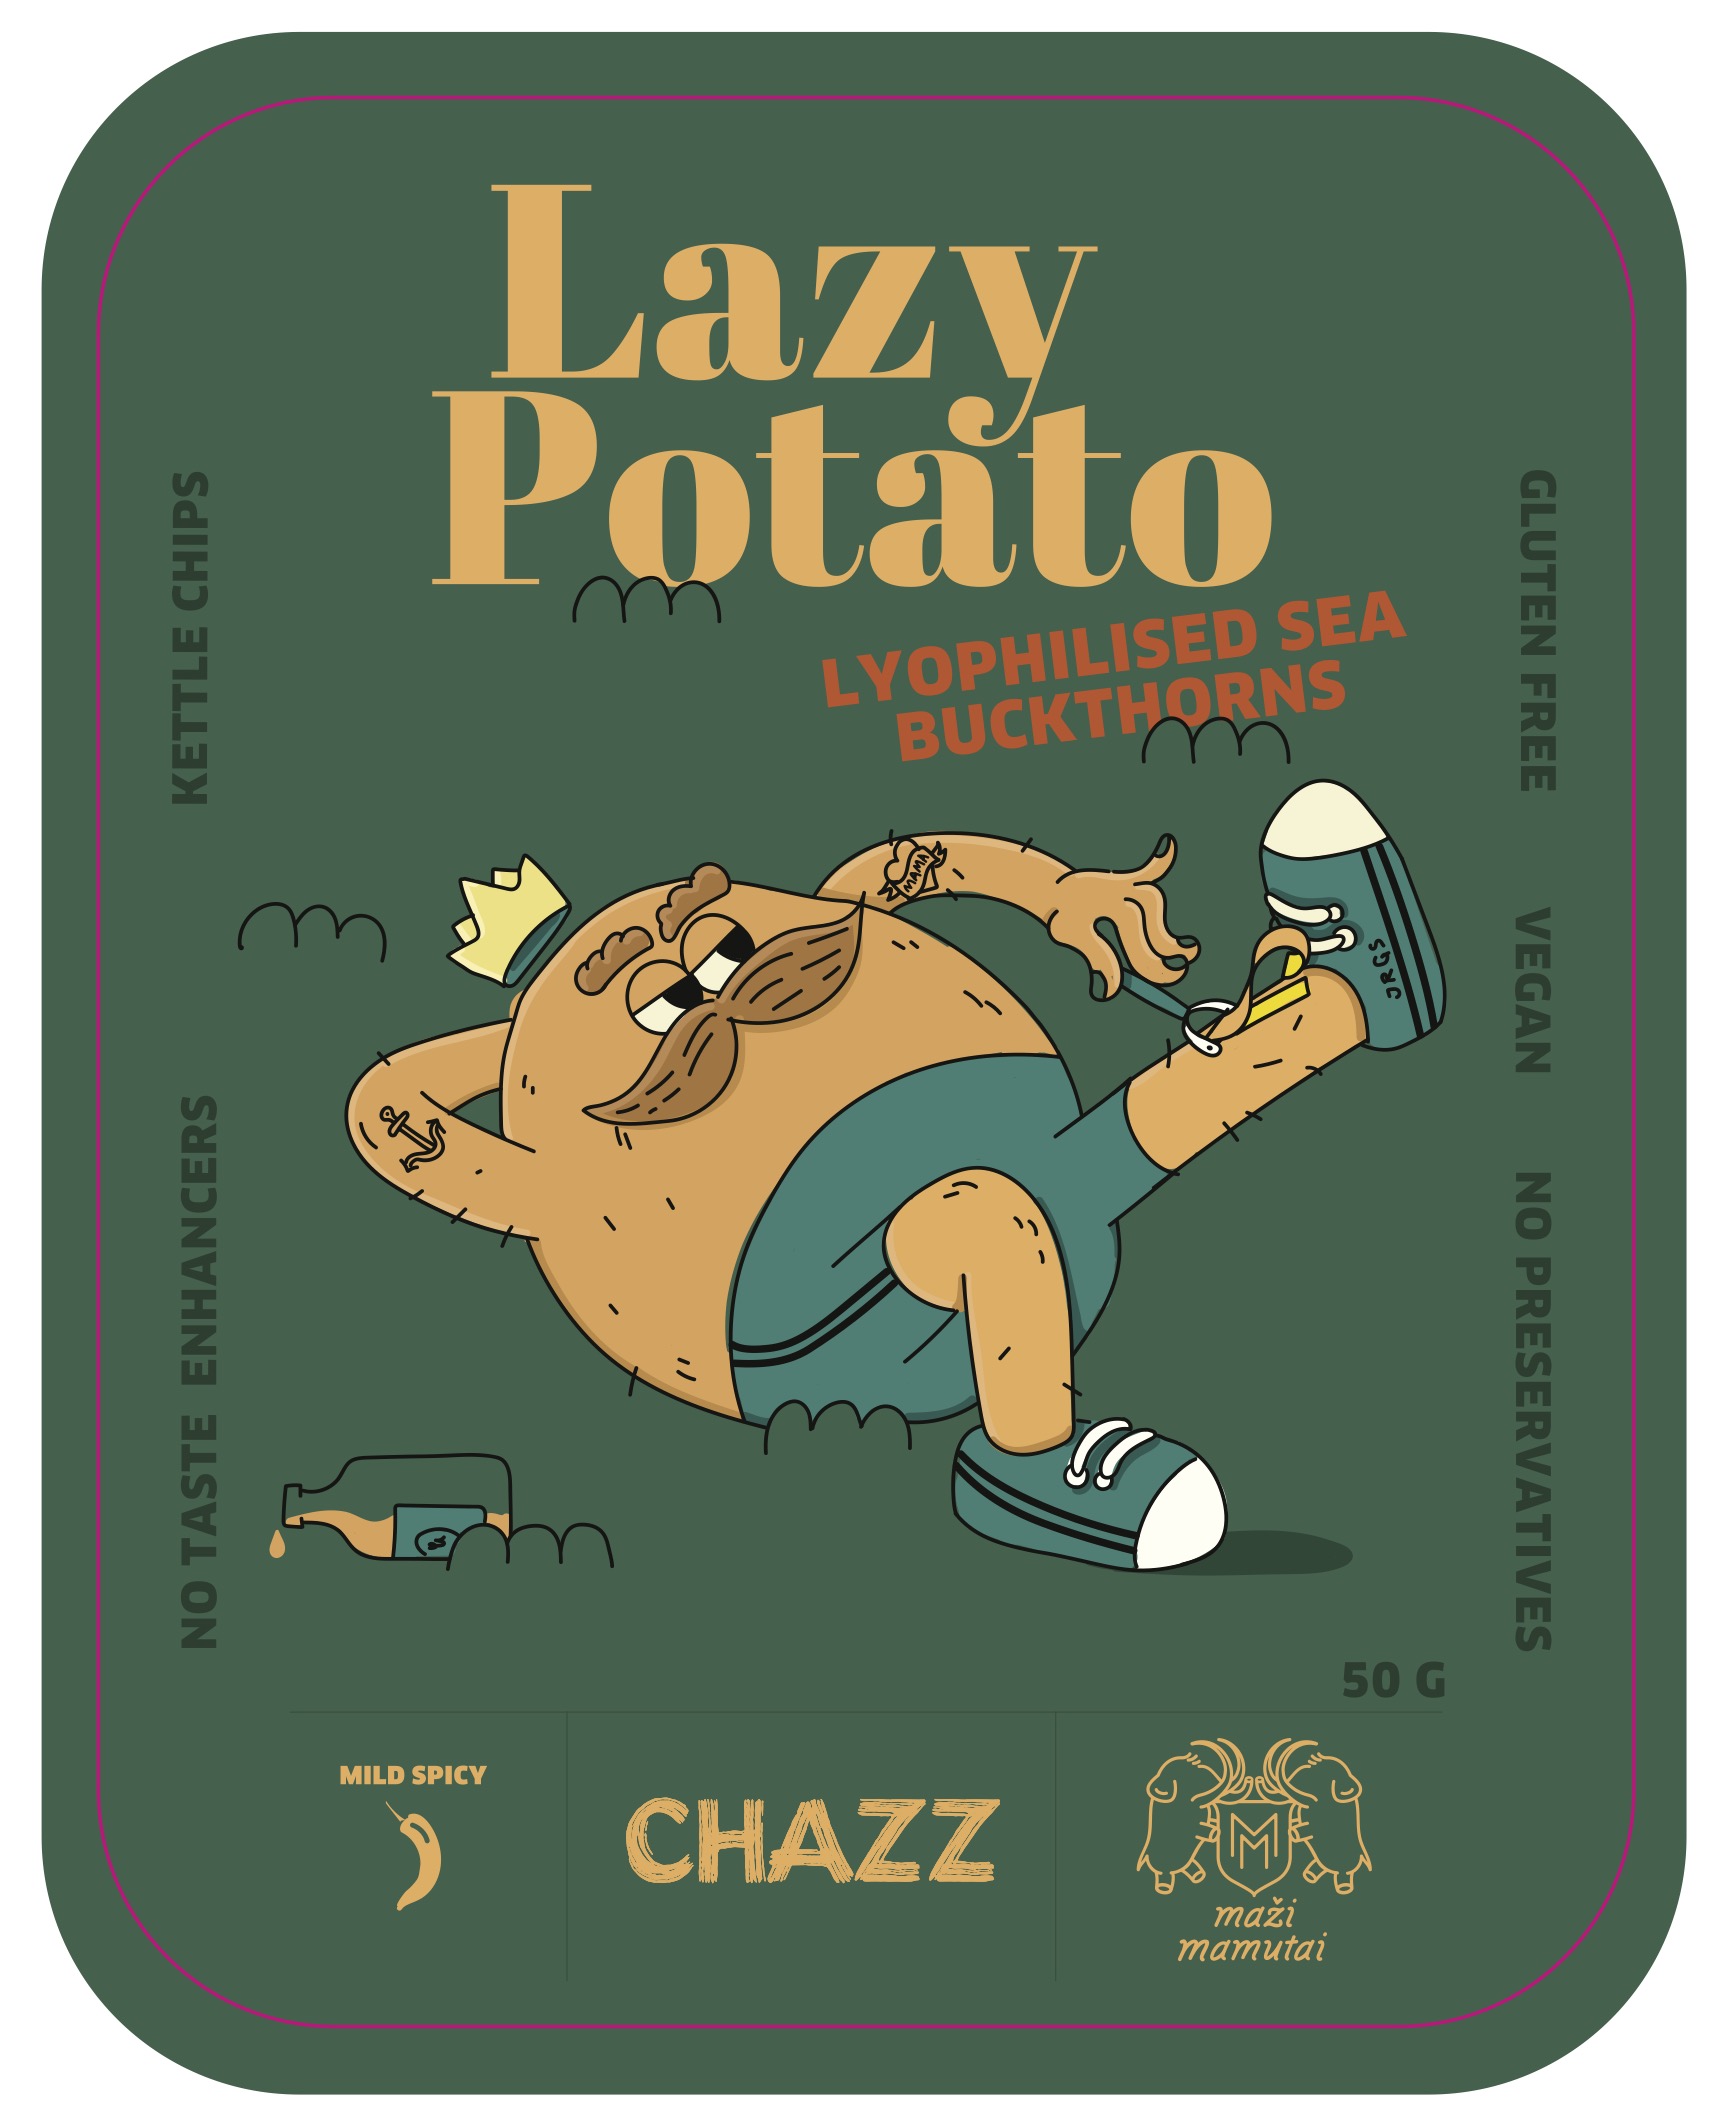 Bulvių traškučiai su liofilizuotais šaltalankiais „Lazy Potato”